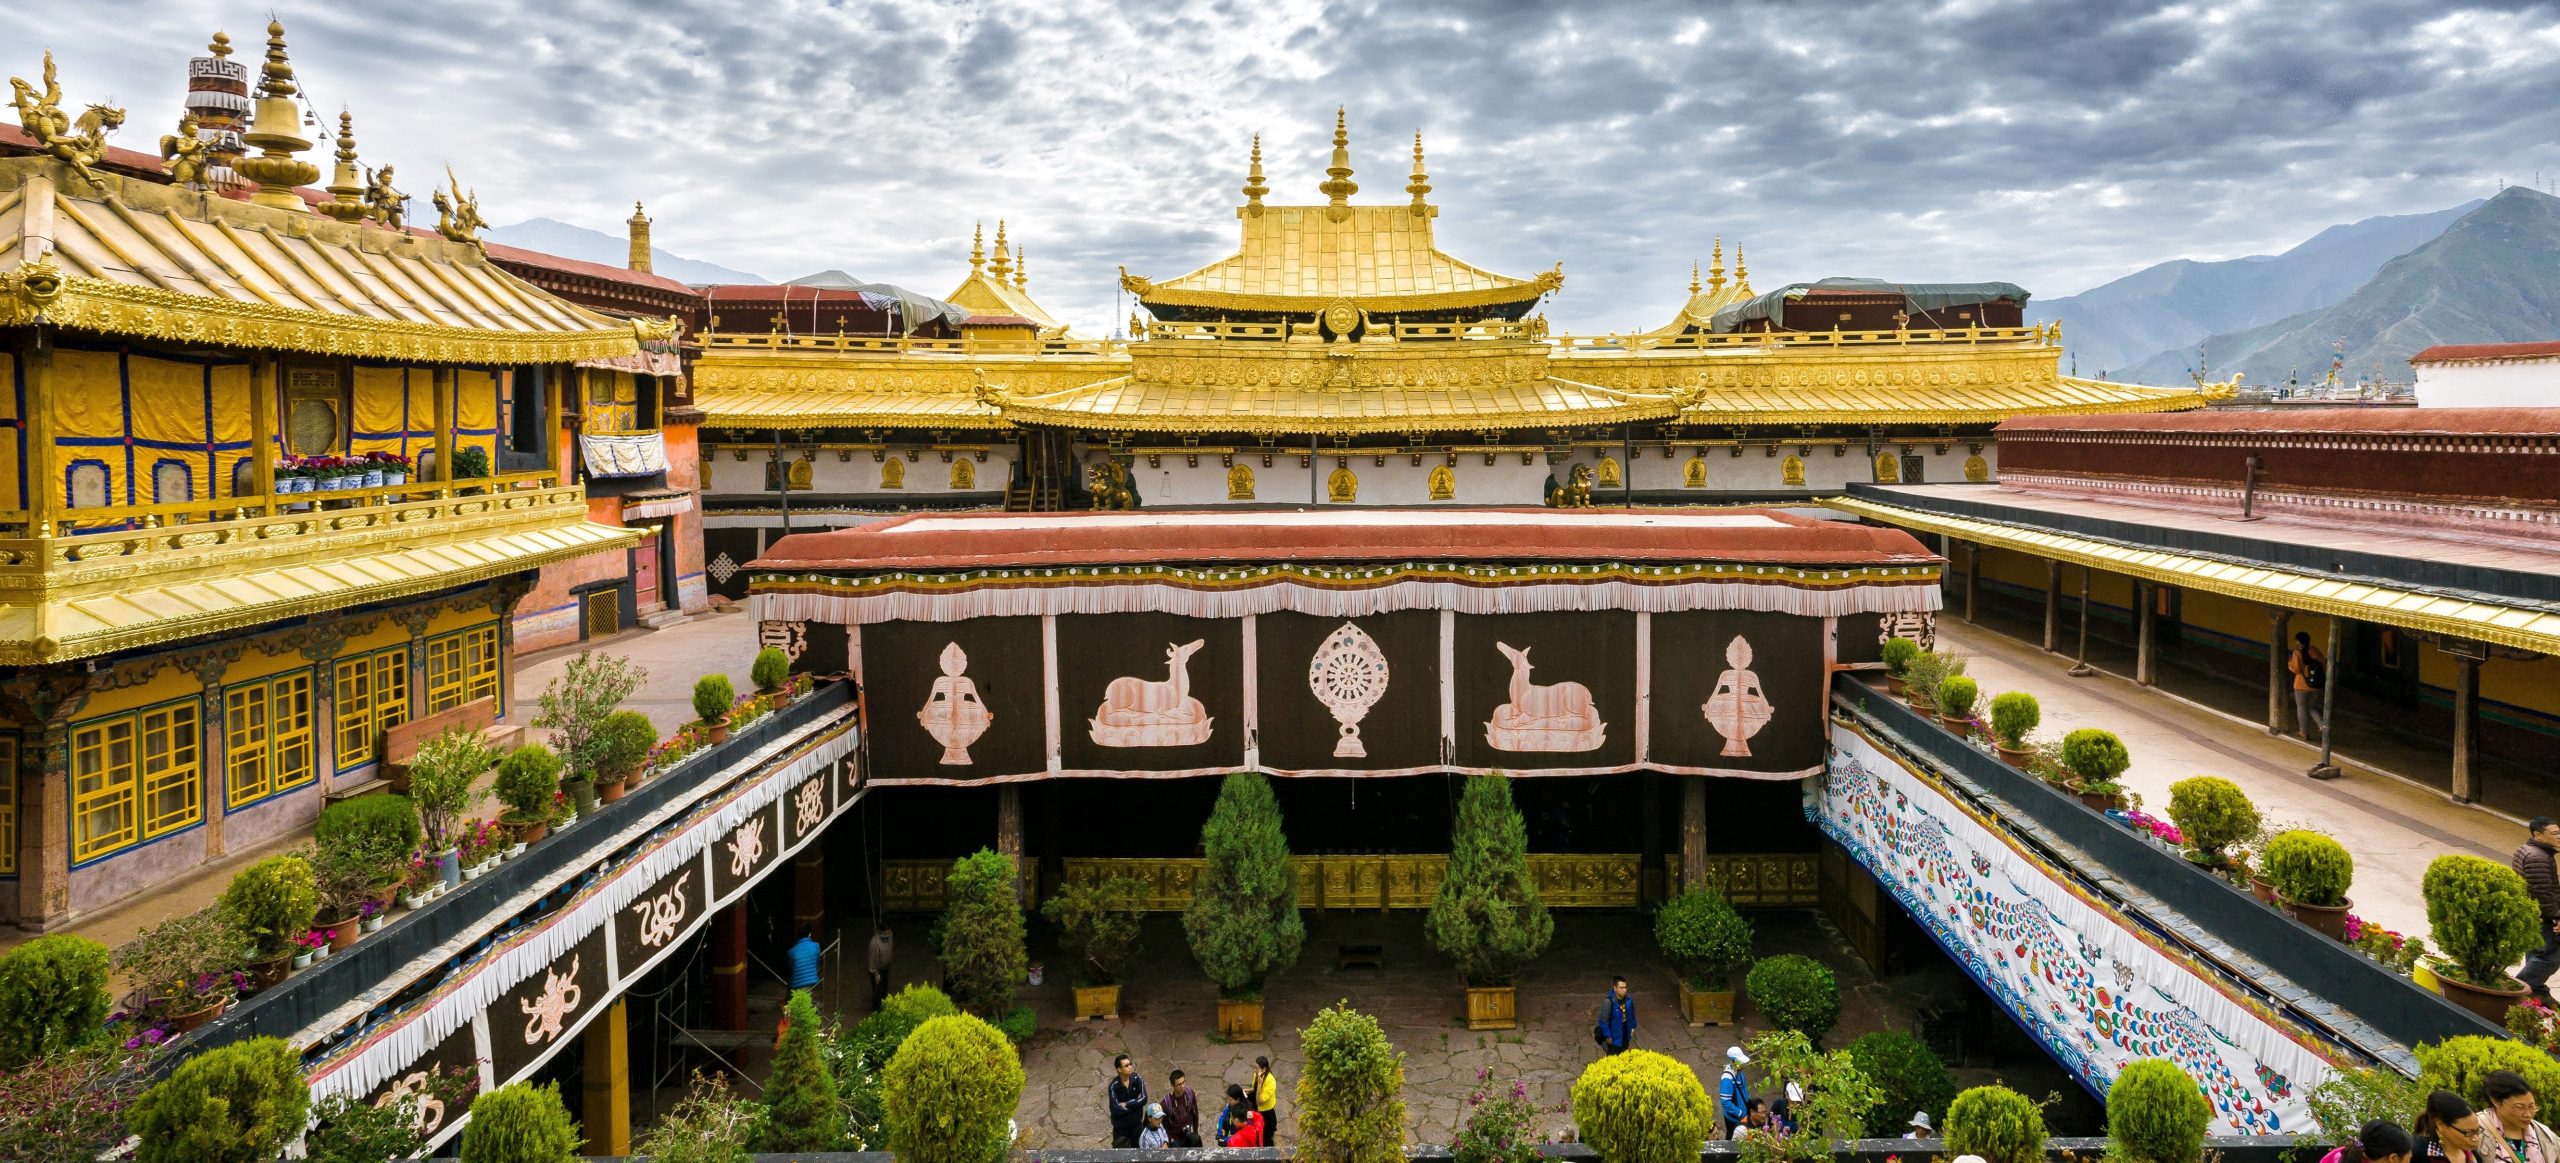 Ζημιές από φωτιά σε ιερό χώρο του θιβετιανού Βουδισμού